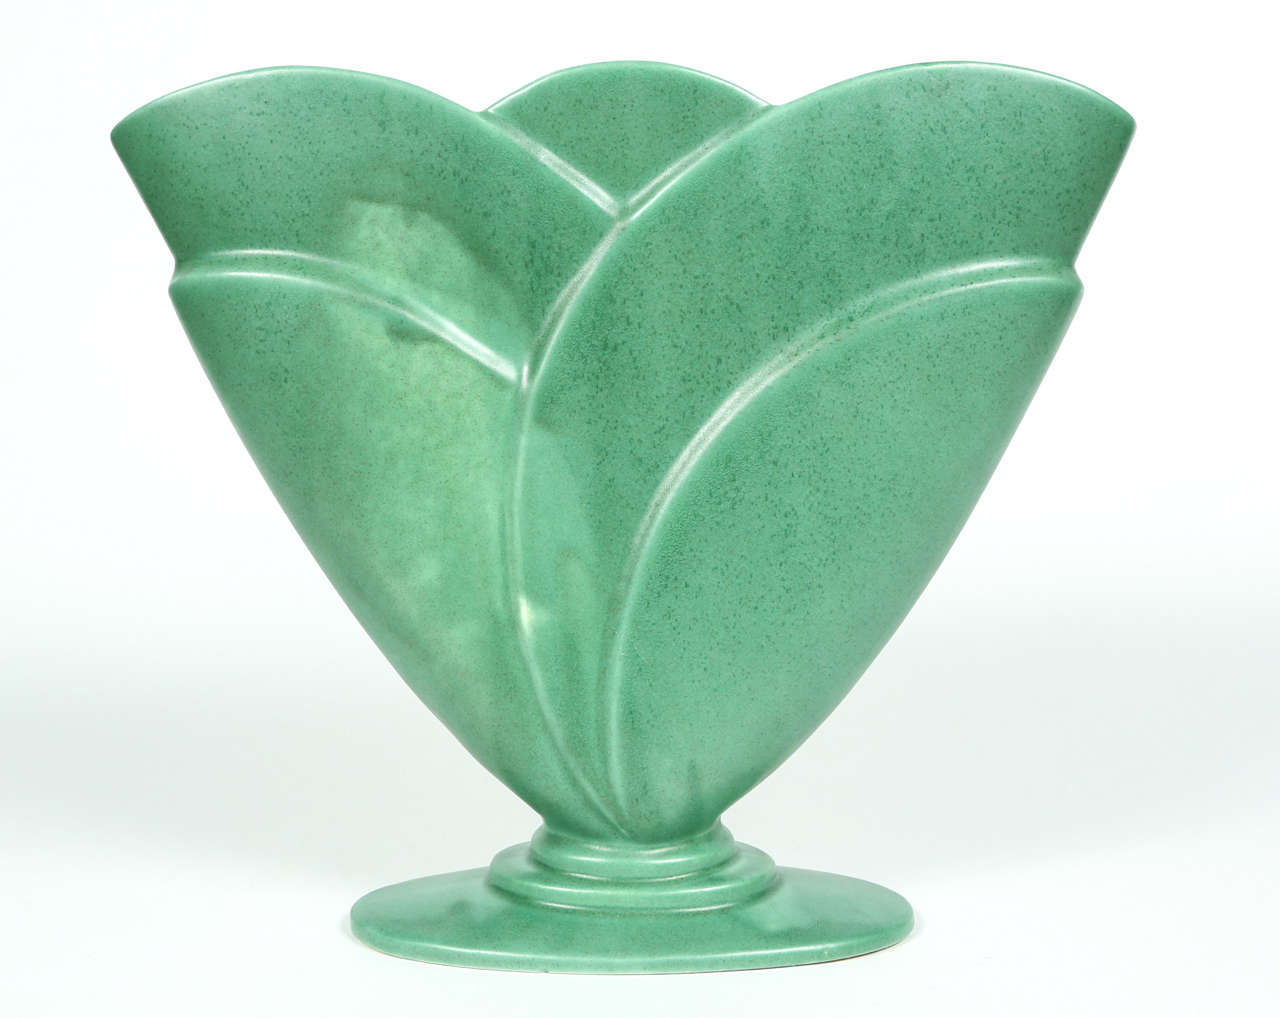 Vintage Royal Haeger green pottery fan vase.